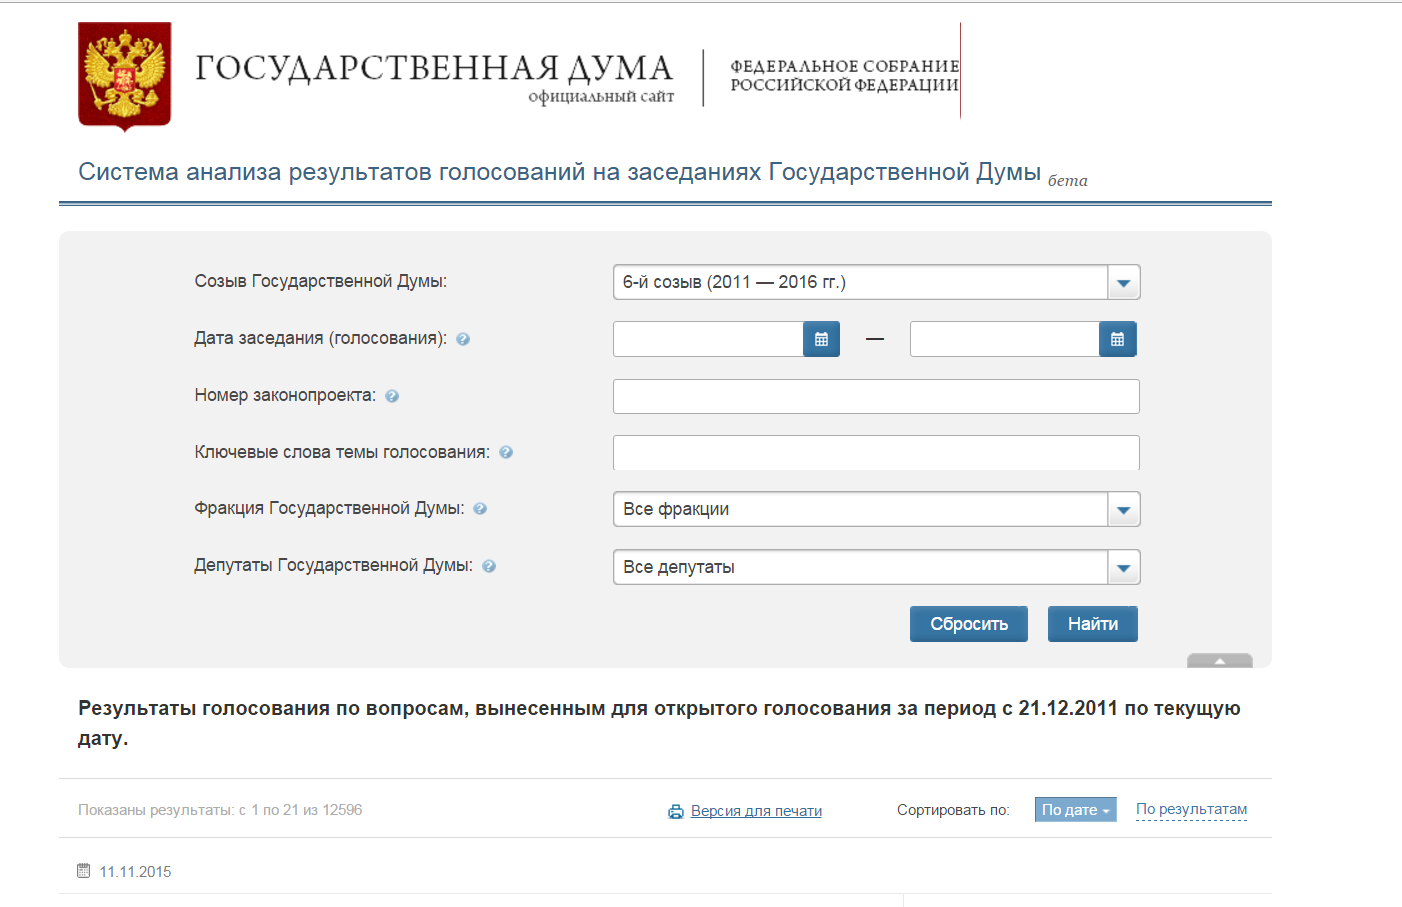 Государственные сайты законов. Регистрационный номер законопроекта от Госдумы. Http://vote.Duma.gov.ru/vote/117112.